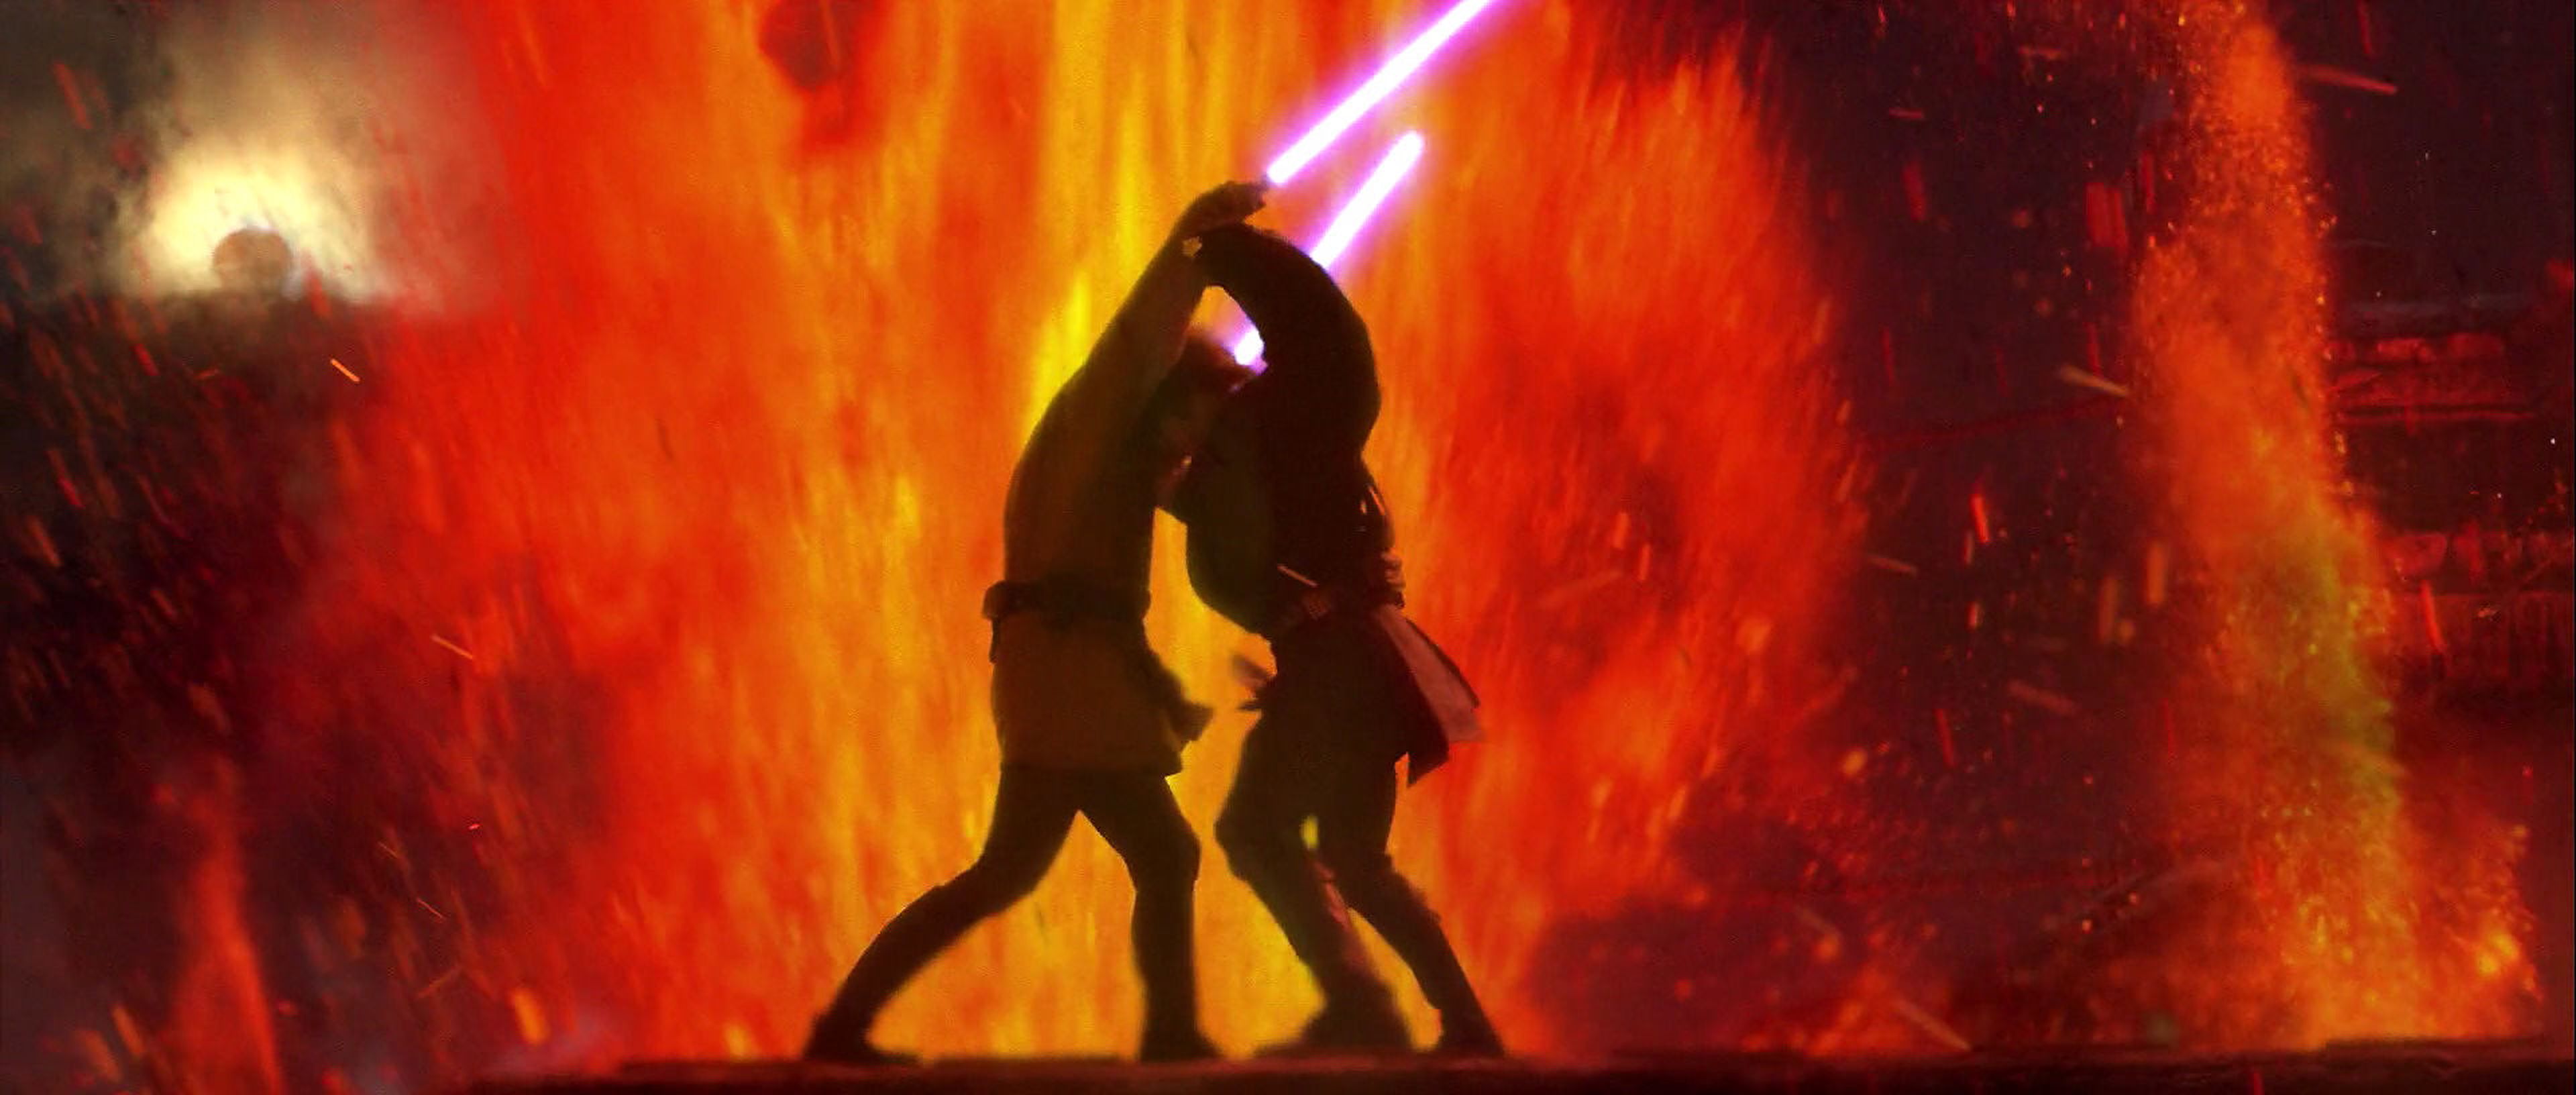 Anakin contra Obi-Wan - Star Wars